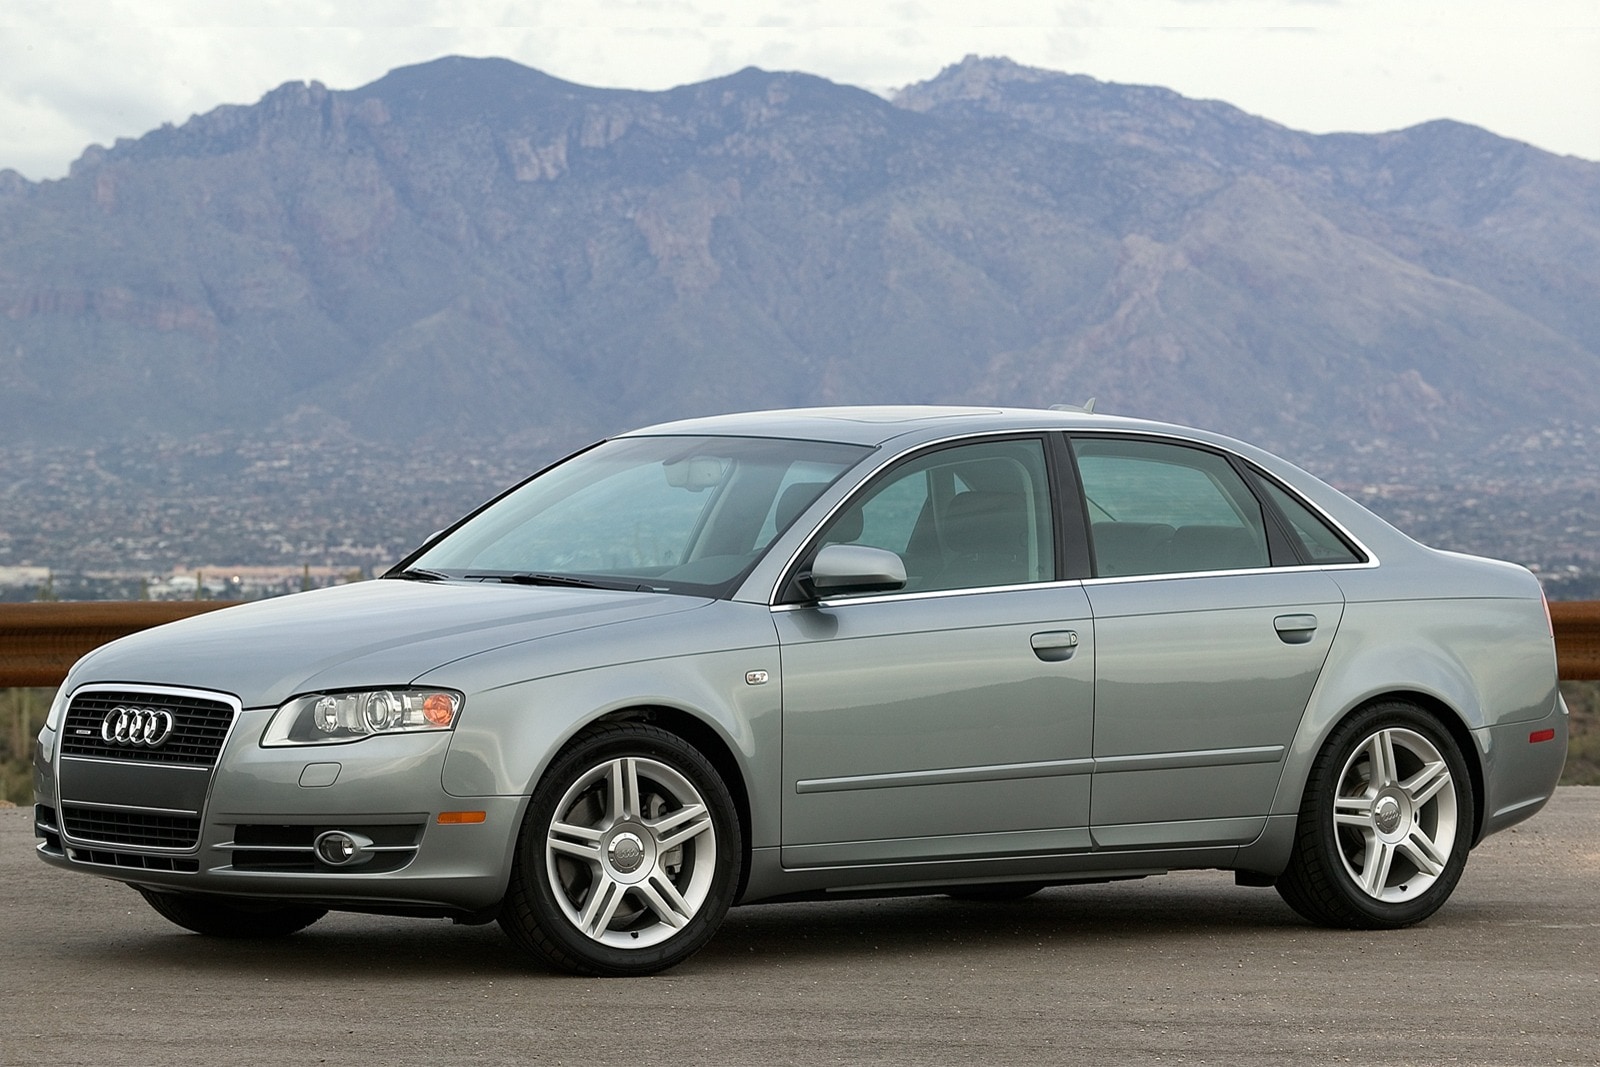 2008 Audi A4 Review & Ratings | Edmunds